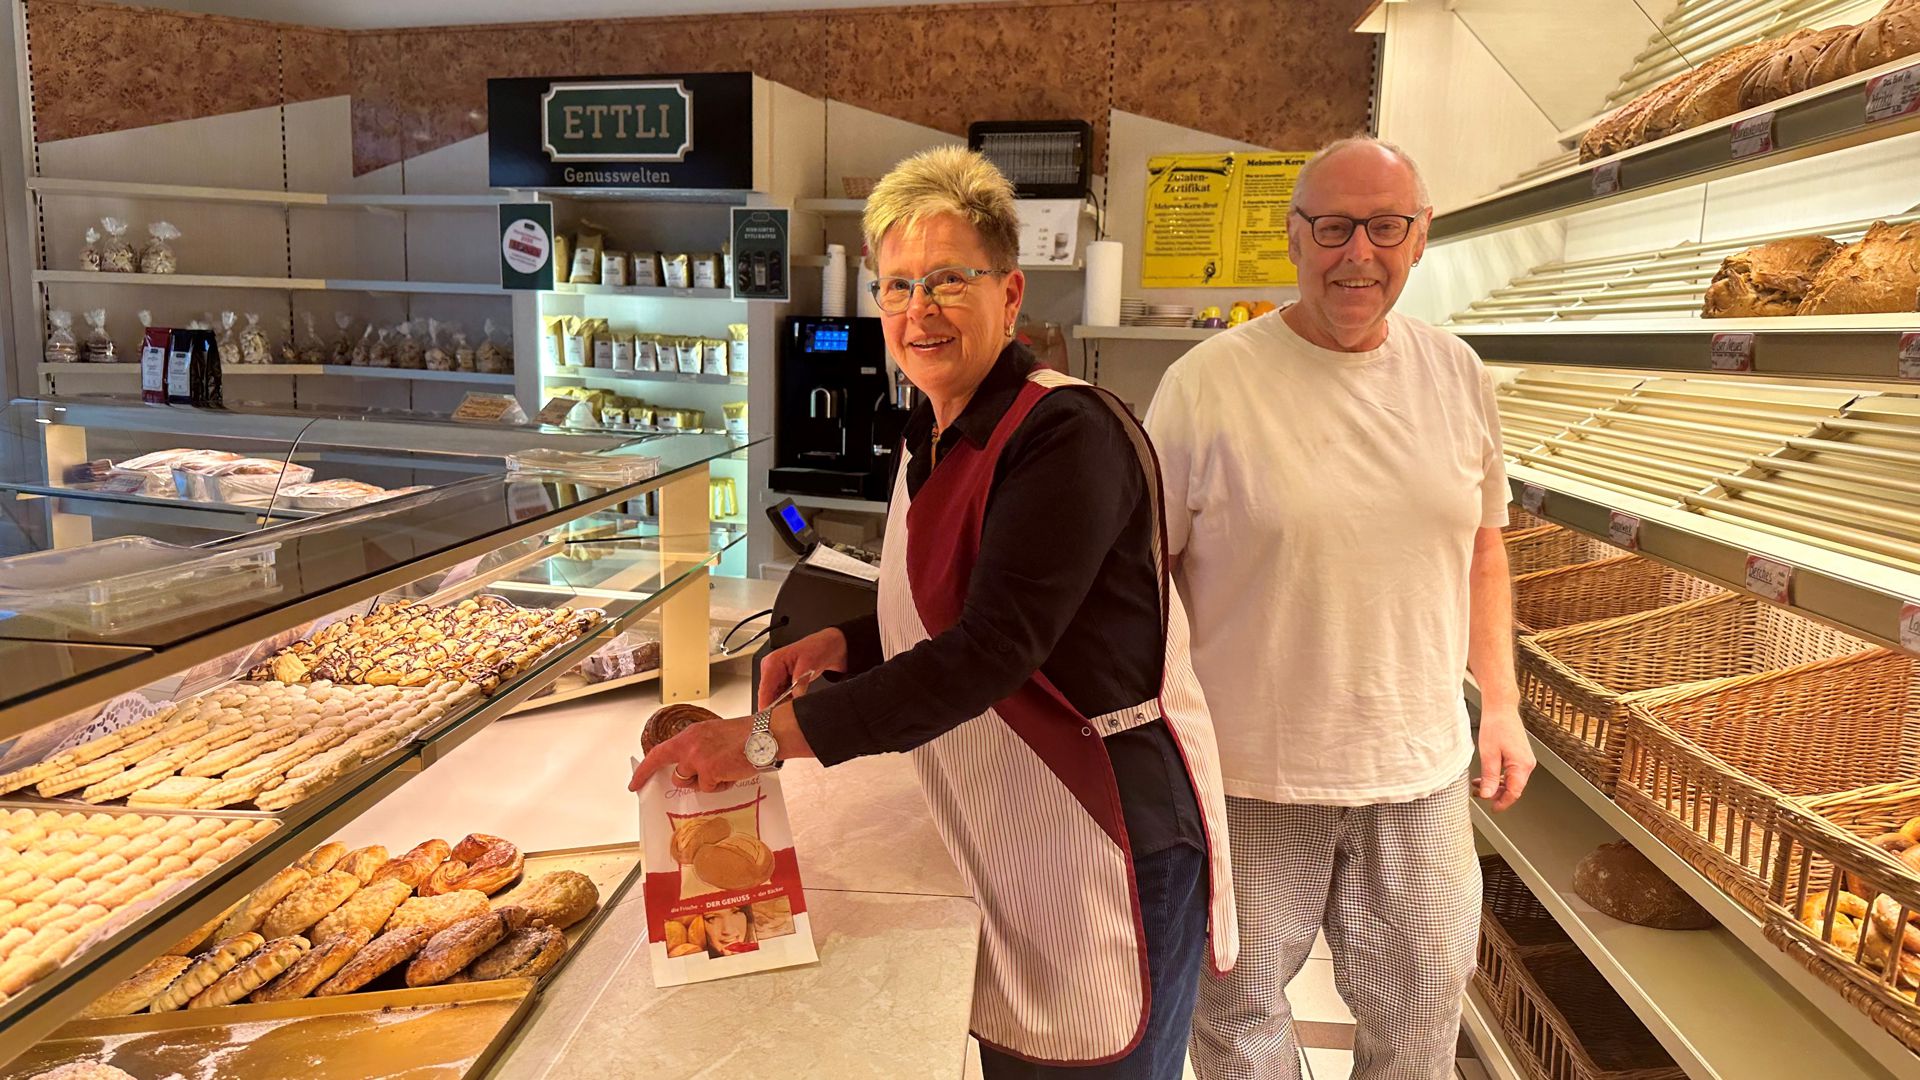 Jörg und Susanne Stucky aus Pfinztal stellen noch vor Weihnachten den Betrieb ihrer Familienbäckerei ein.